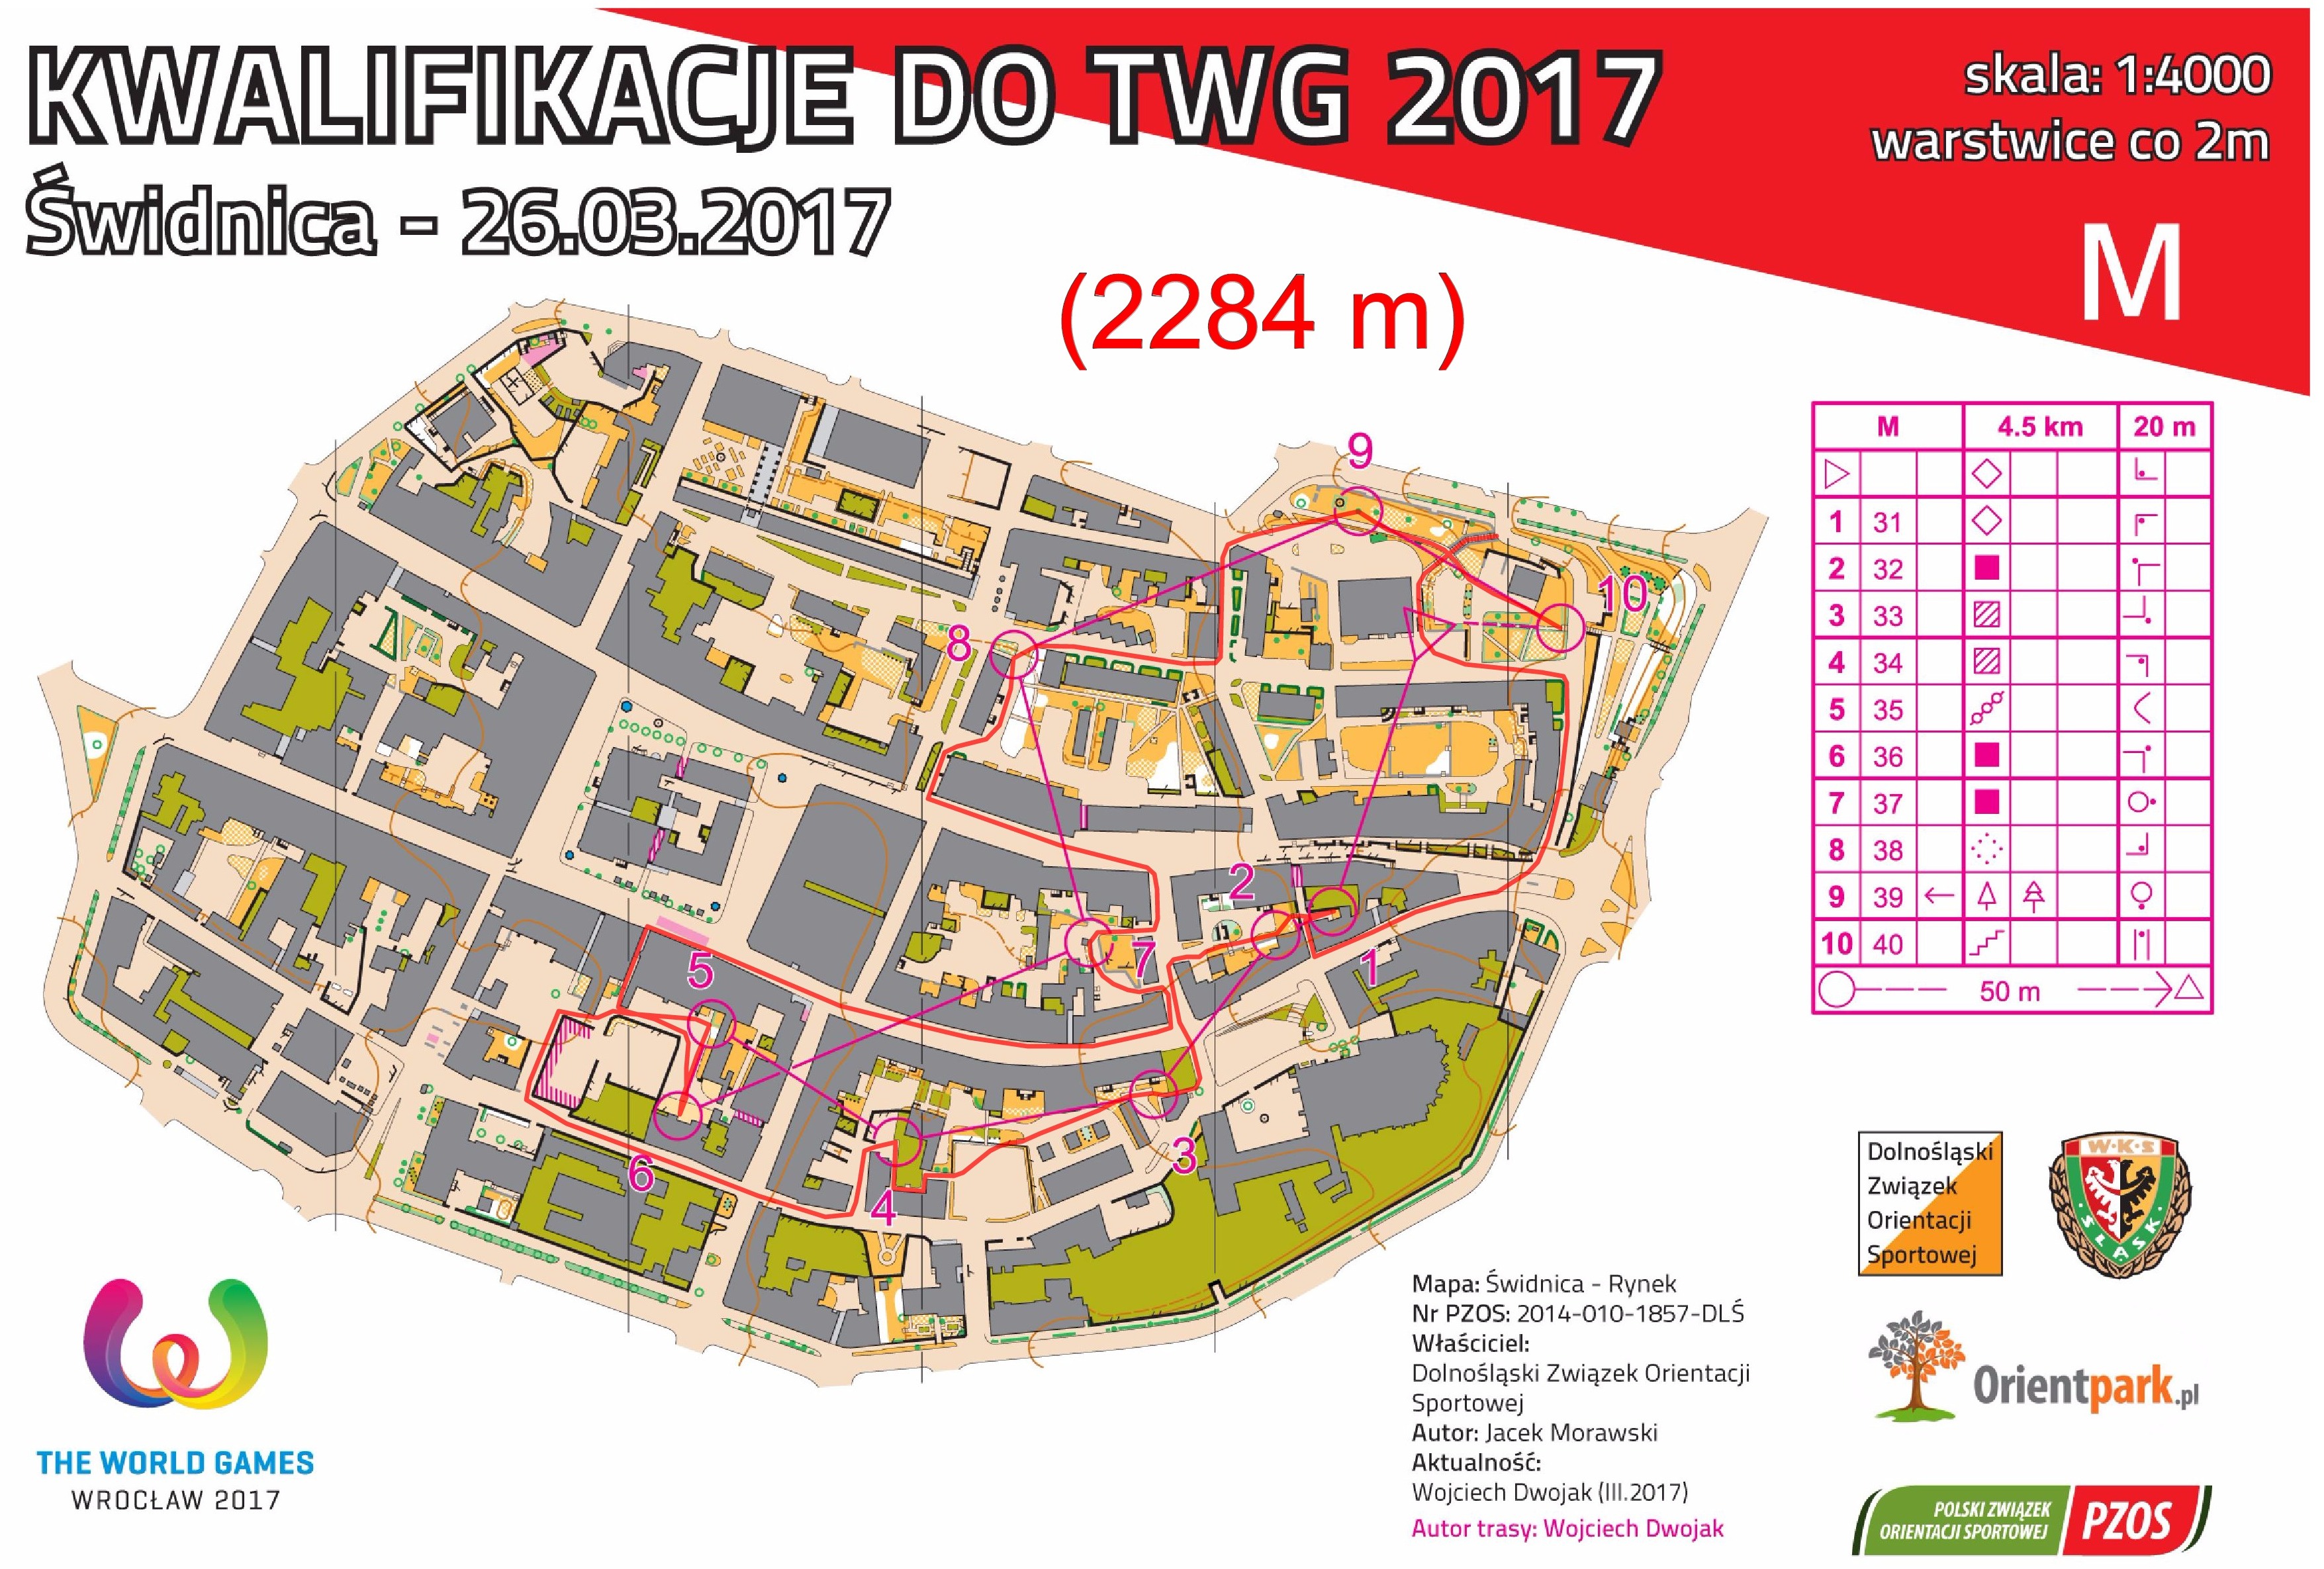 kwalifikacje do TWG - sprint #2, cz. I (26/03/2017)